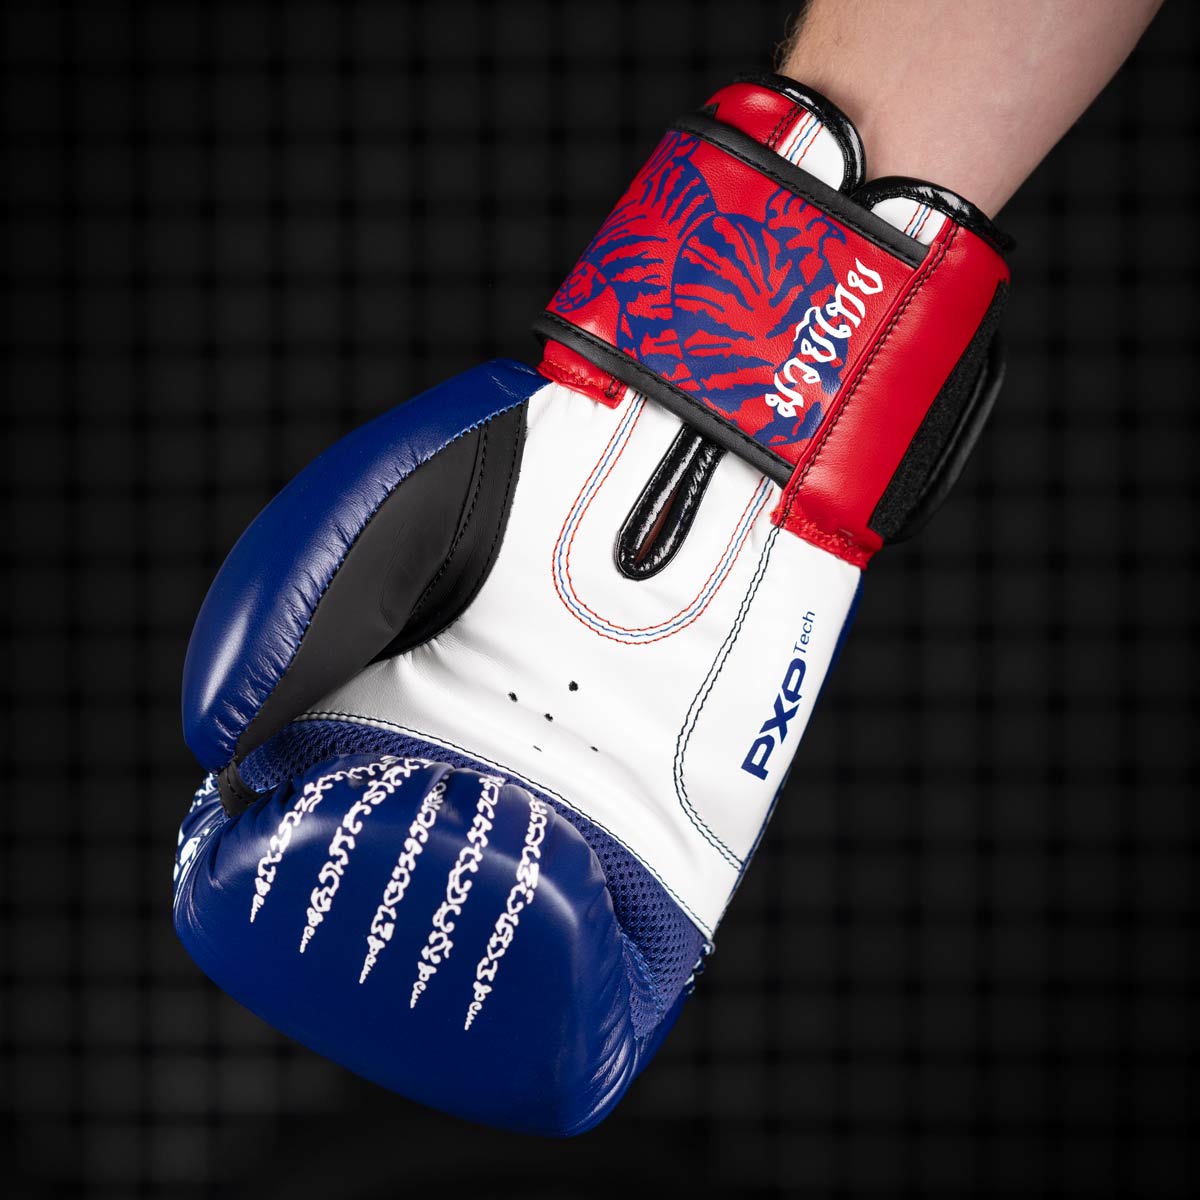 Die Phantom Muay Thai Boxhandschuhe in Blau/Weiss/Rot verfügen über einen Mesh Einsatz an der Handinnenfläche für eine optimale Belüftung beim Training.